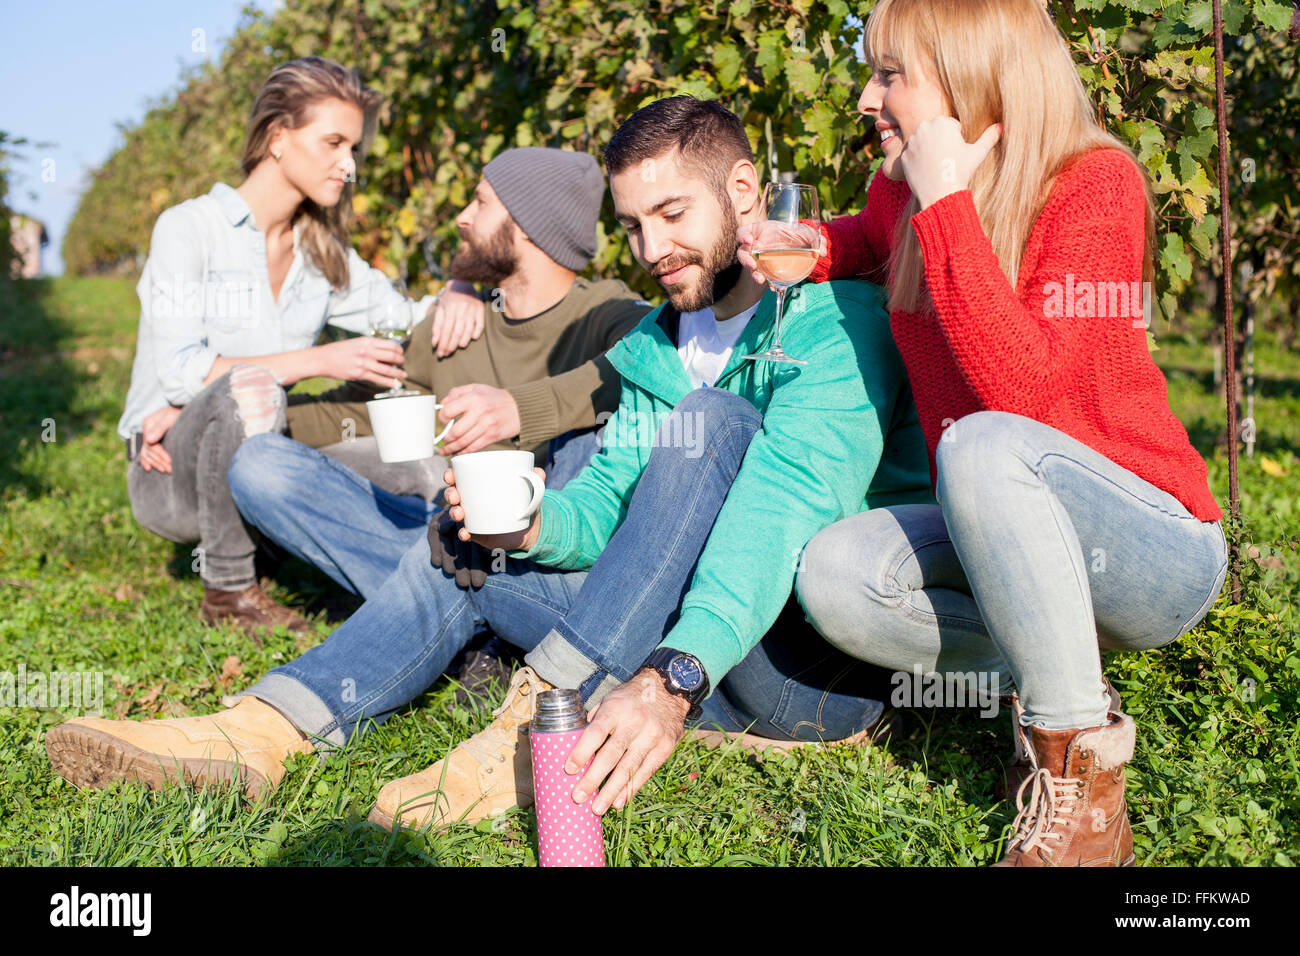 Group of friends taking a break in vineyard Stock Photo